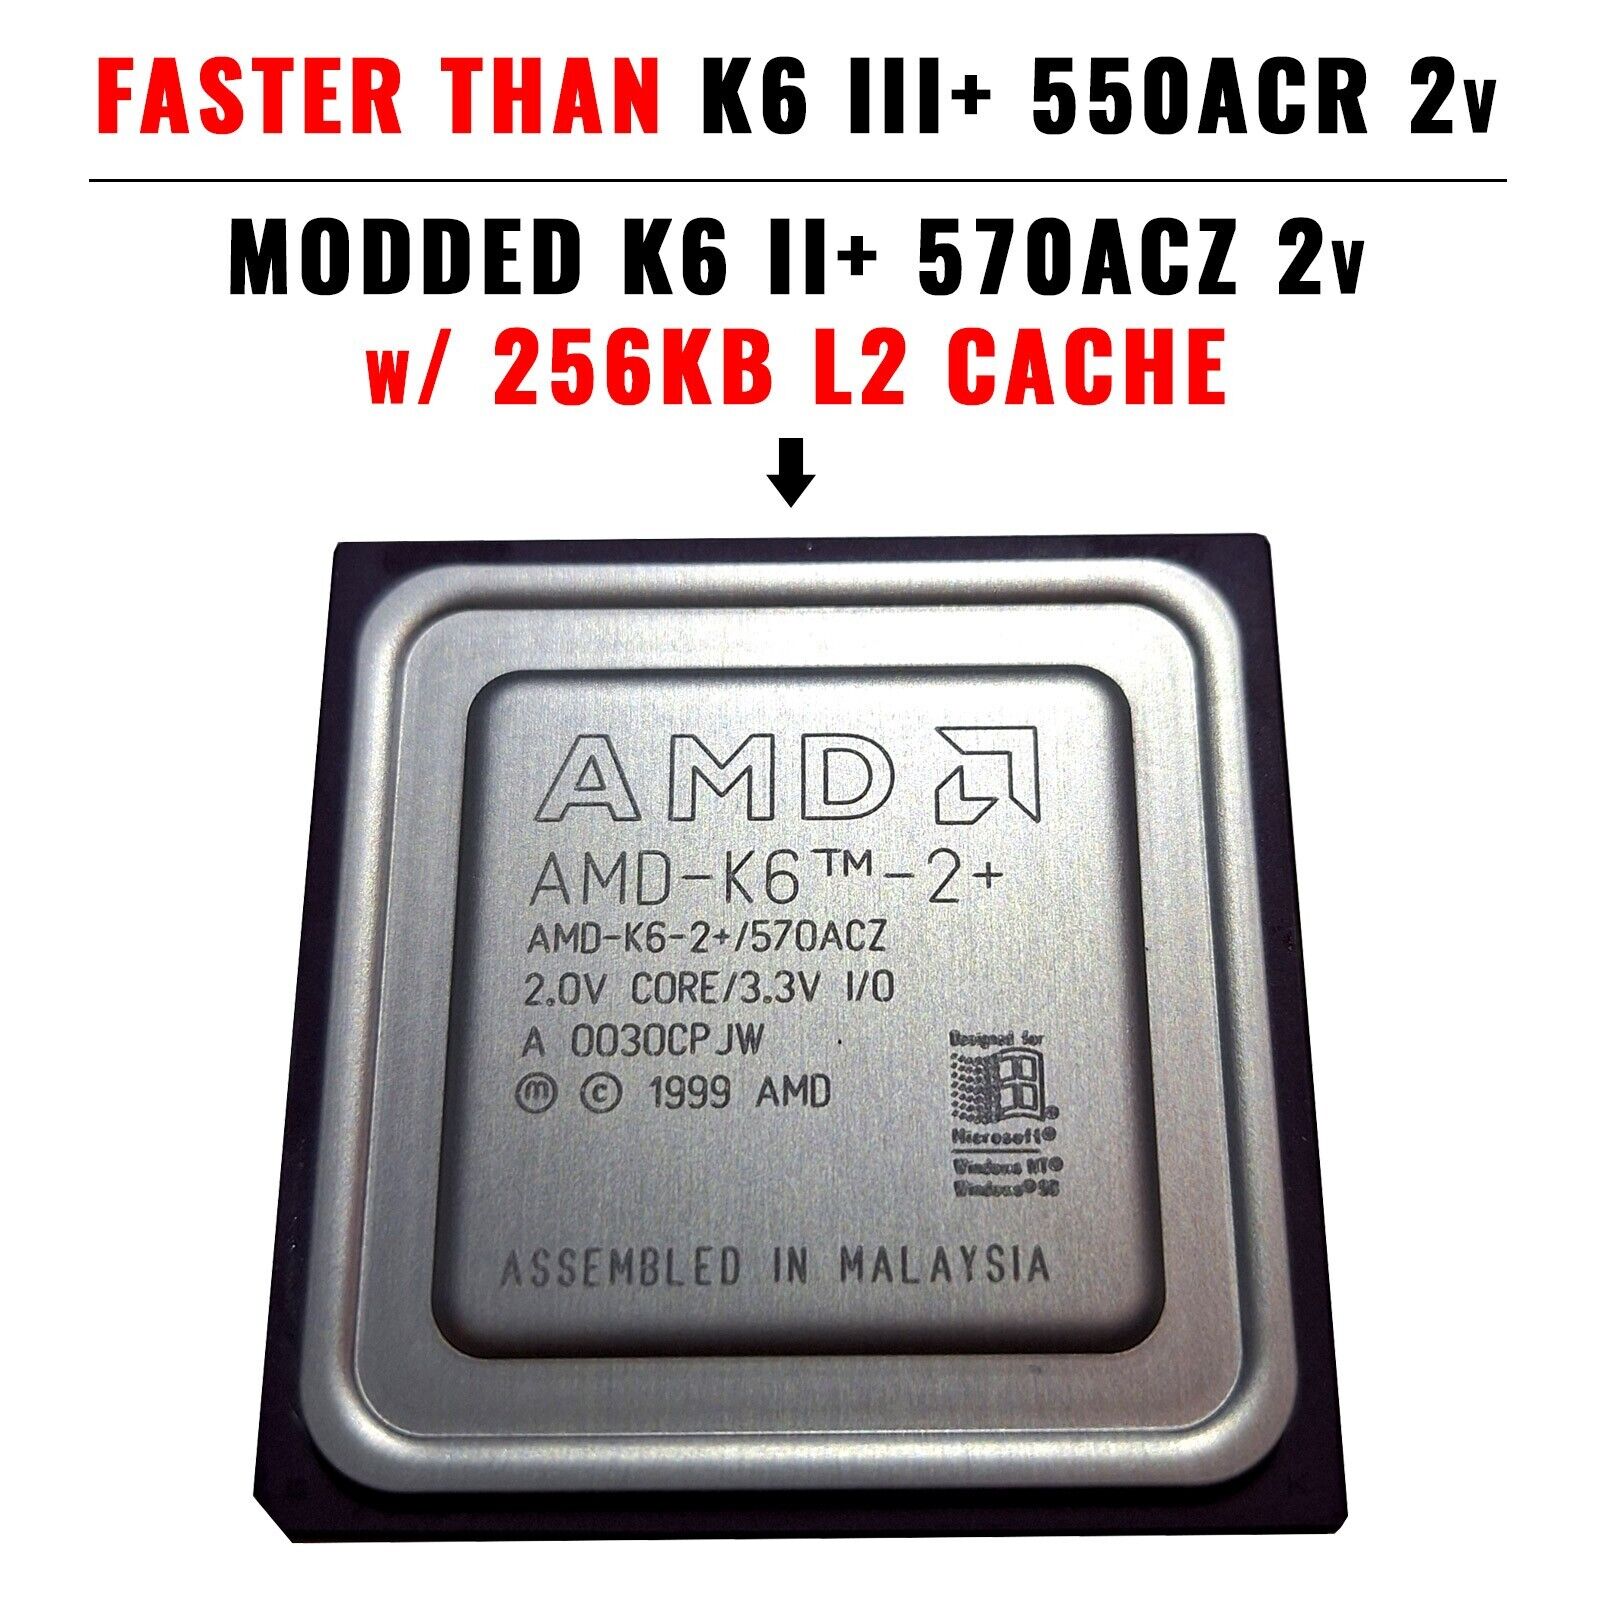 Modded AMD K6 2+ 570ACZ to K6 III+ 550ACR CPU • K6 3+ 256kb Cache • 600-650Mhz+